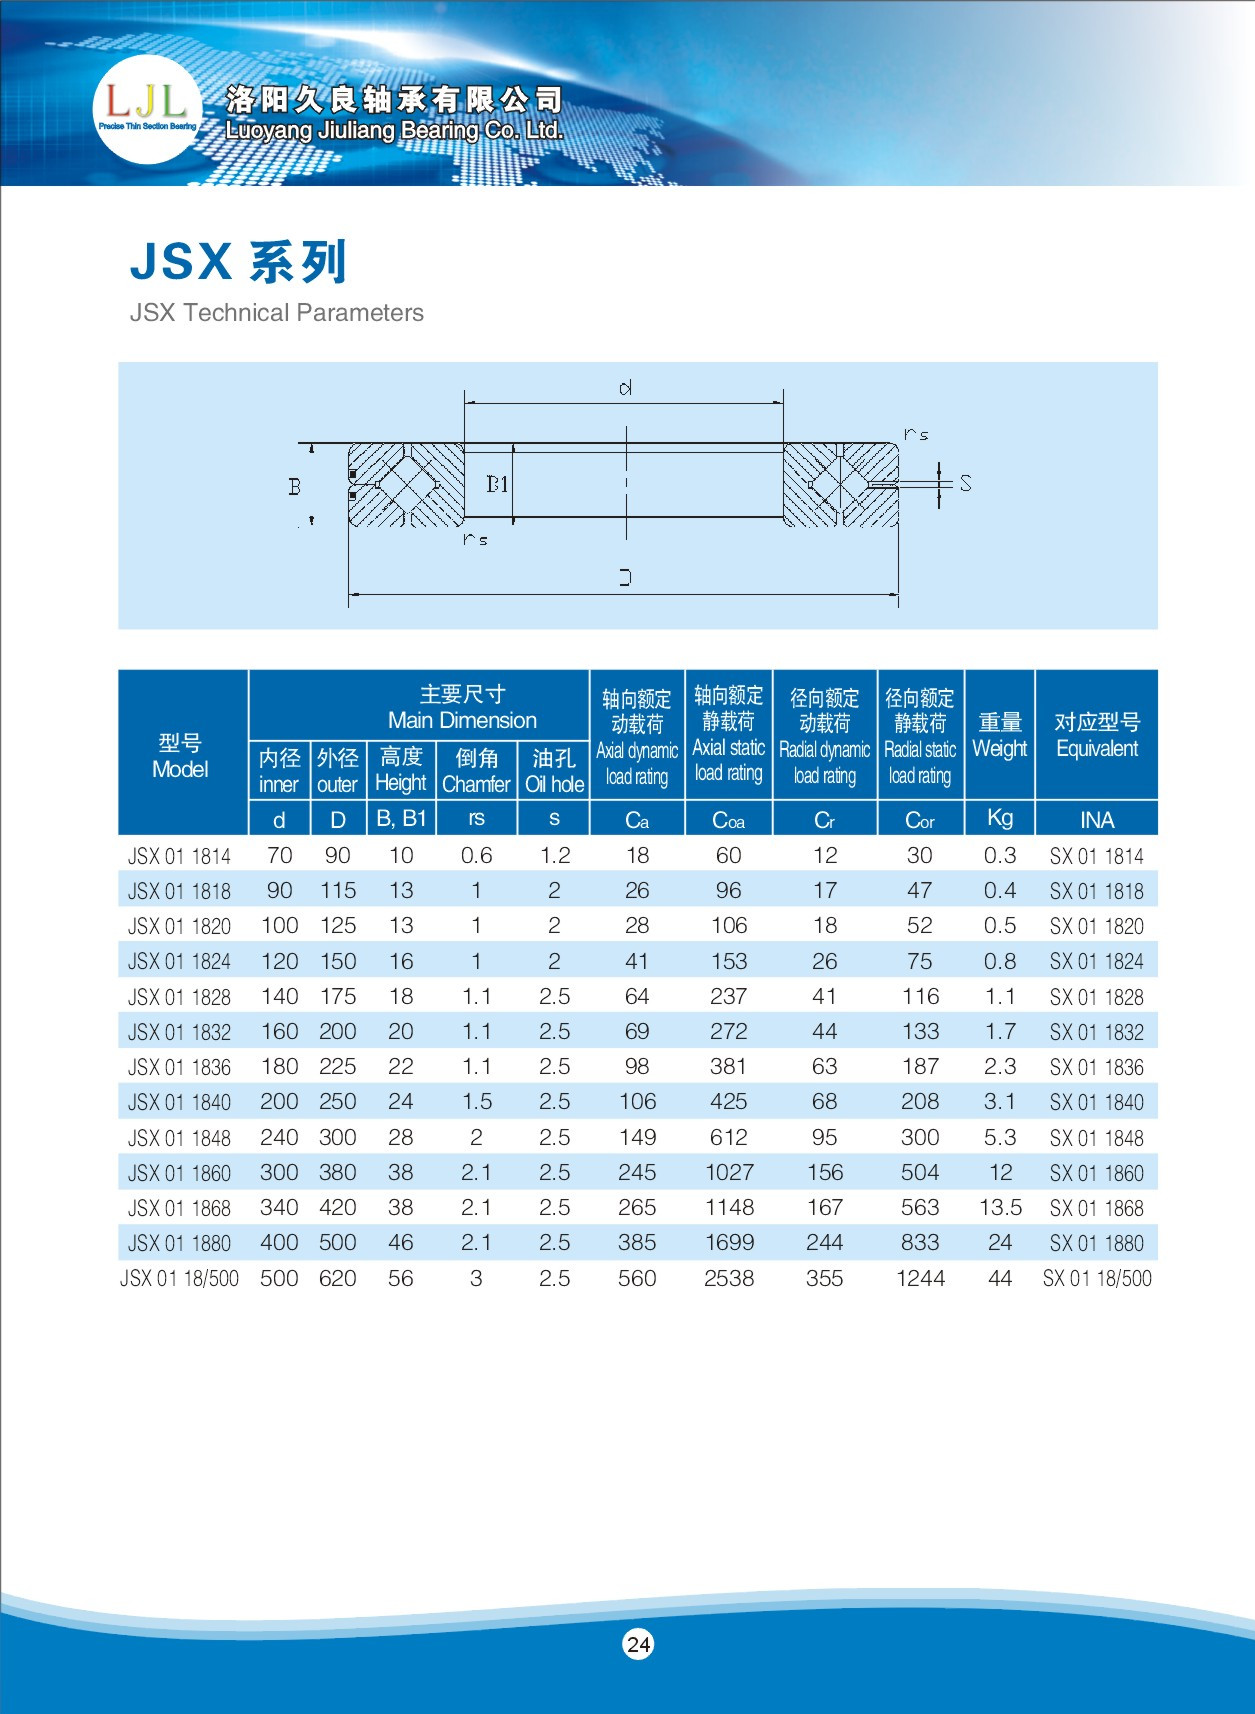 JSX011814 | JSX011818 | JSX011820 | JSX011824 | JSX011828 | JSX011832 | JSX011836 | JSX011840 | JSX011848 | JSX011860 | JSX011868 | JSX011880 | JSX0118/500 | SX011814 | SX011818 | SX011820 | SX011824 | SX011828 | SX011832 | SX011836 | SX011840 | SX011848 | SX011860 | SX011868 | SX011880 | SX0118/500 | 